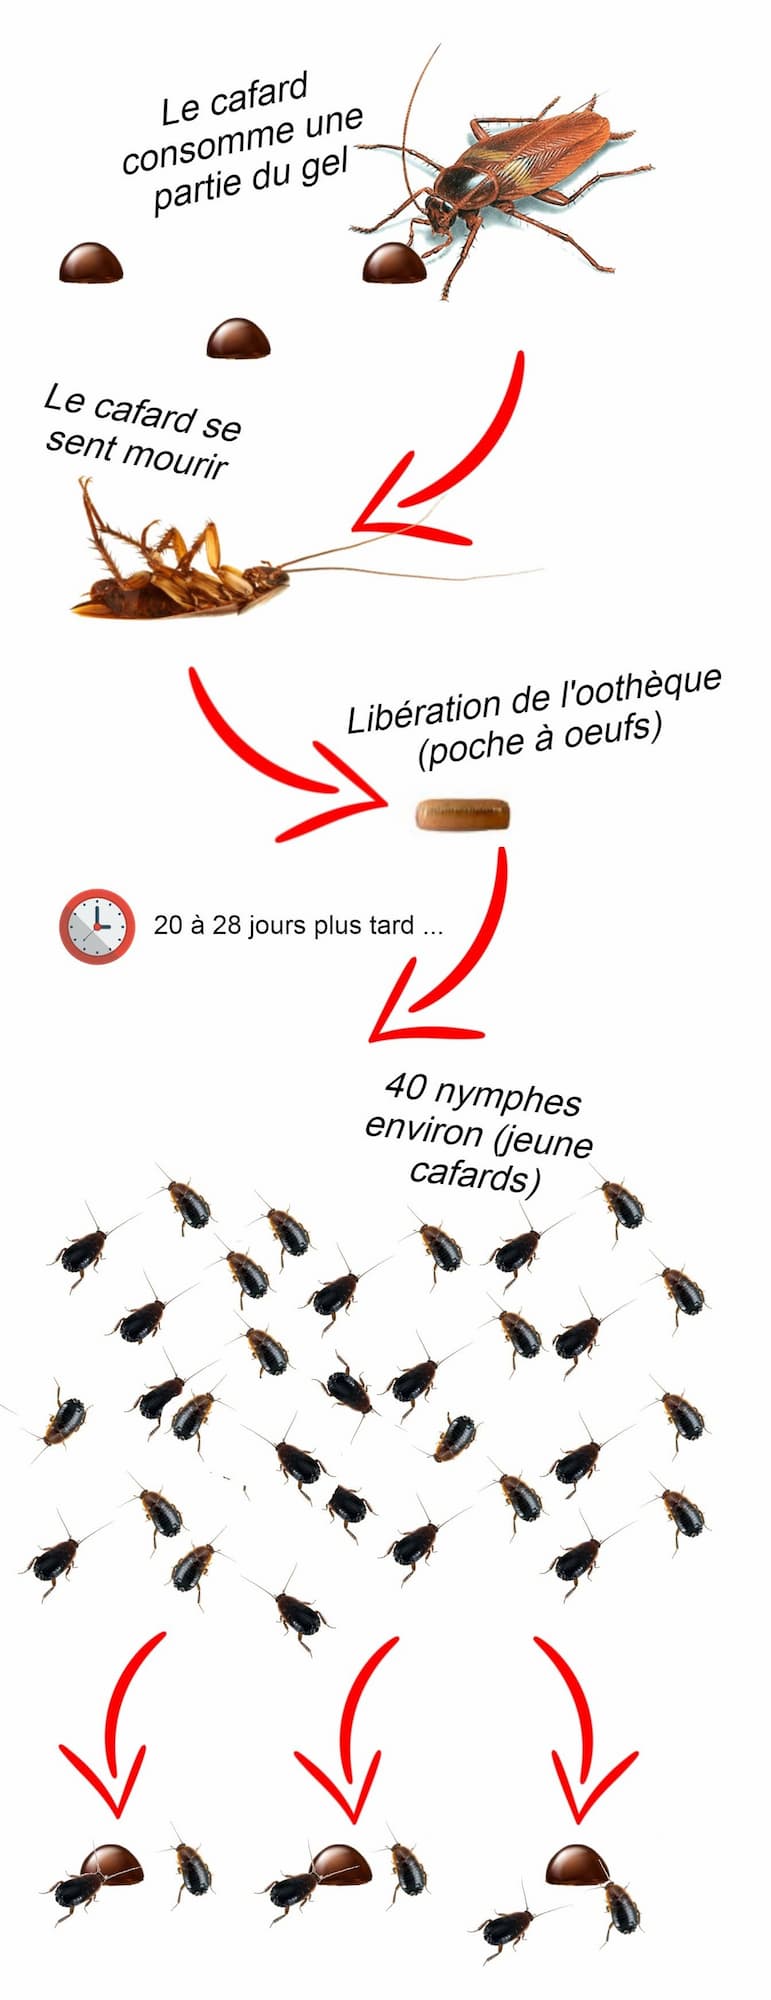 Schéma d'empoisonnement des lymphes de cafard par ingestion de gel BLANTOR